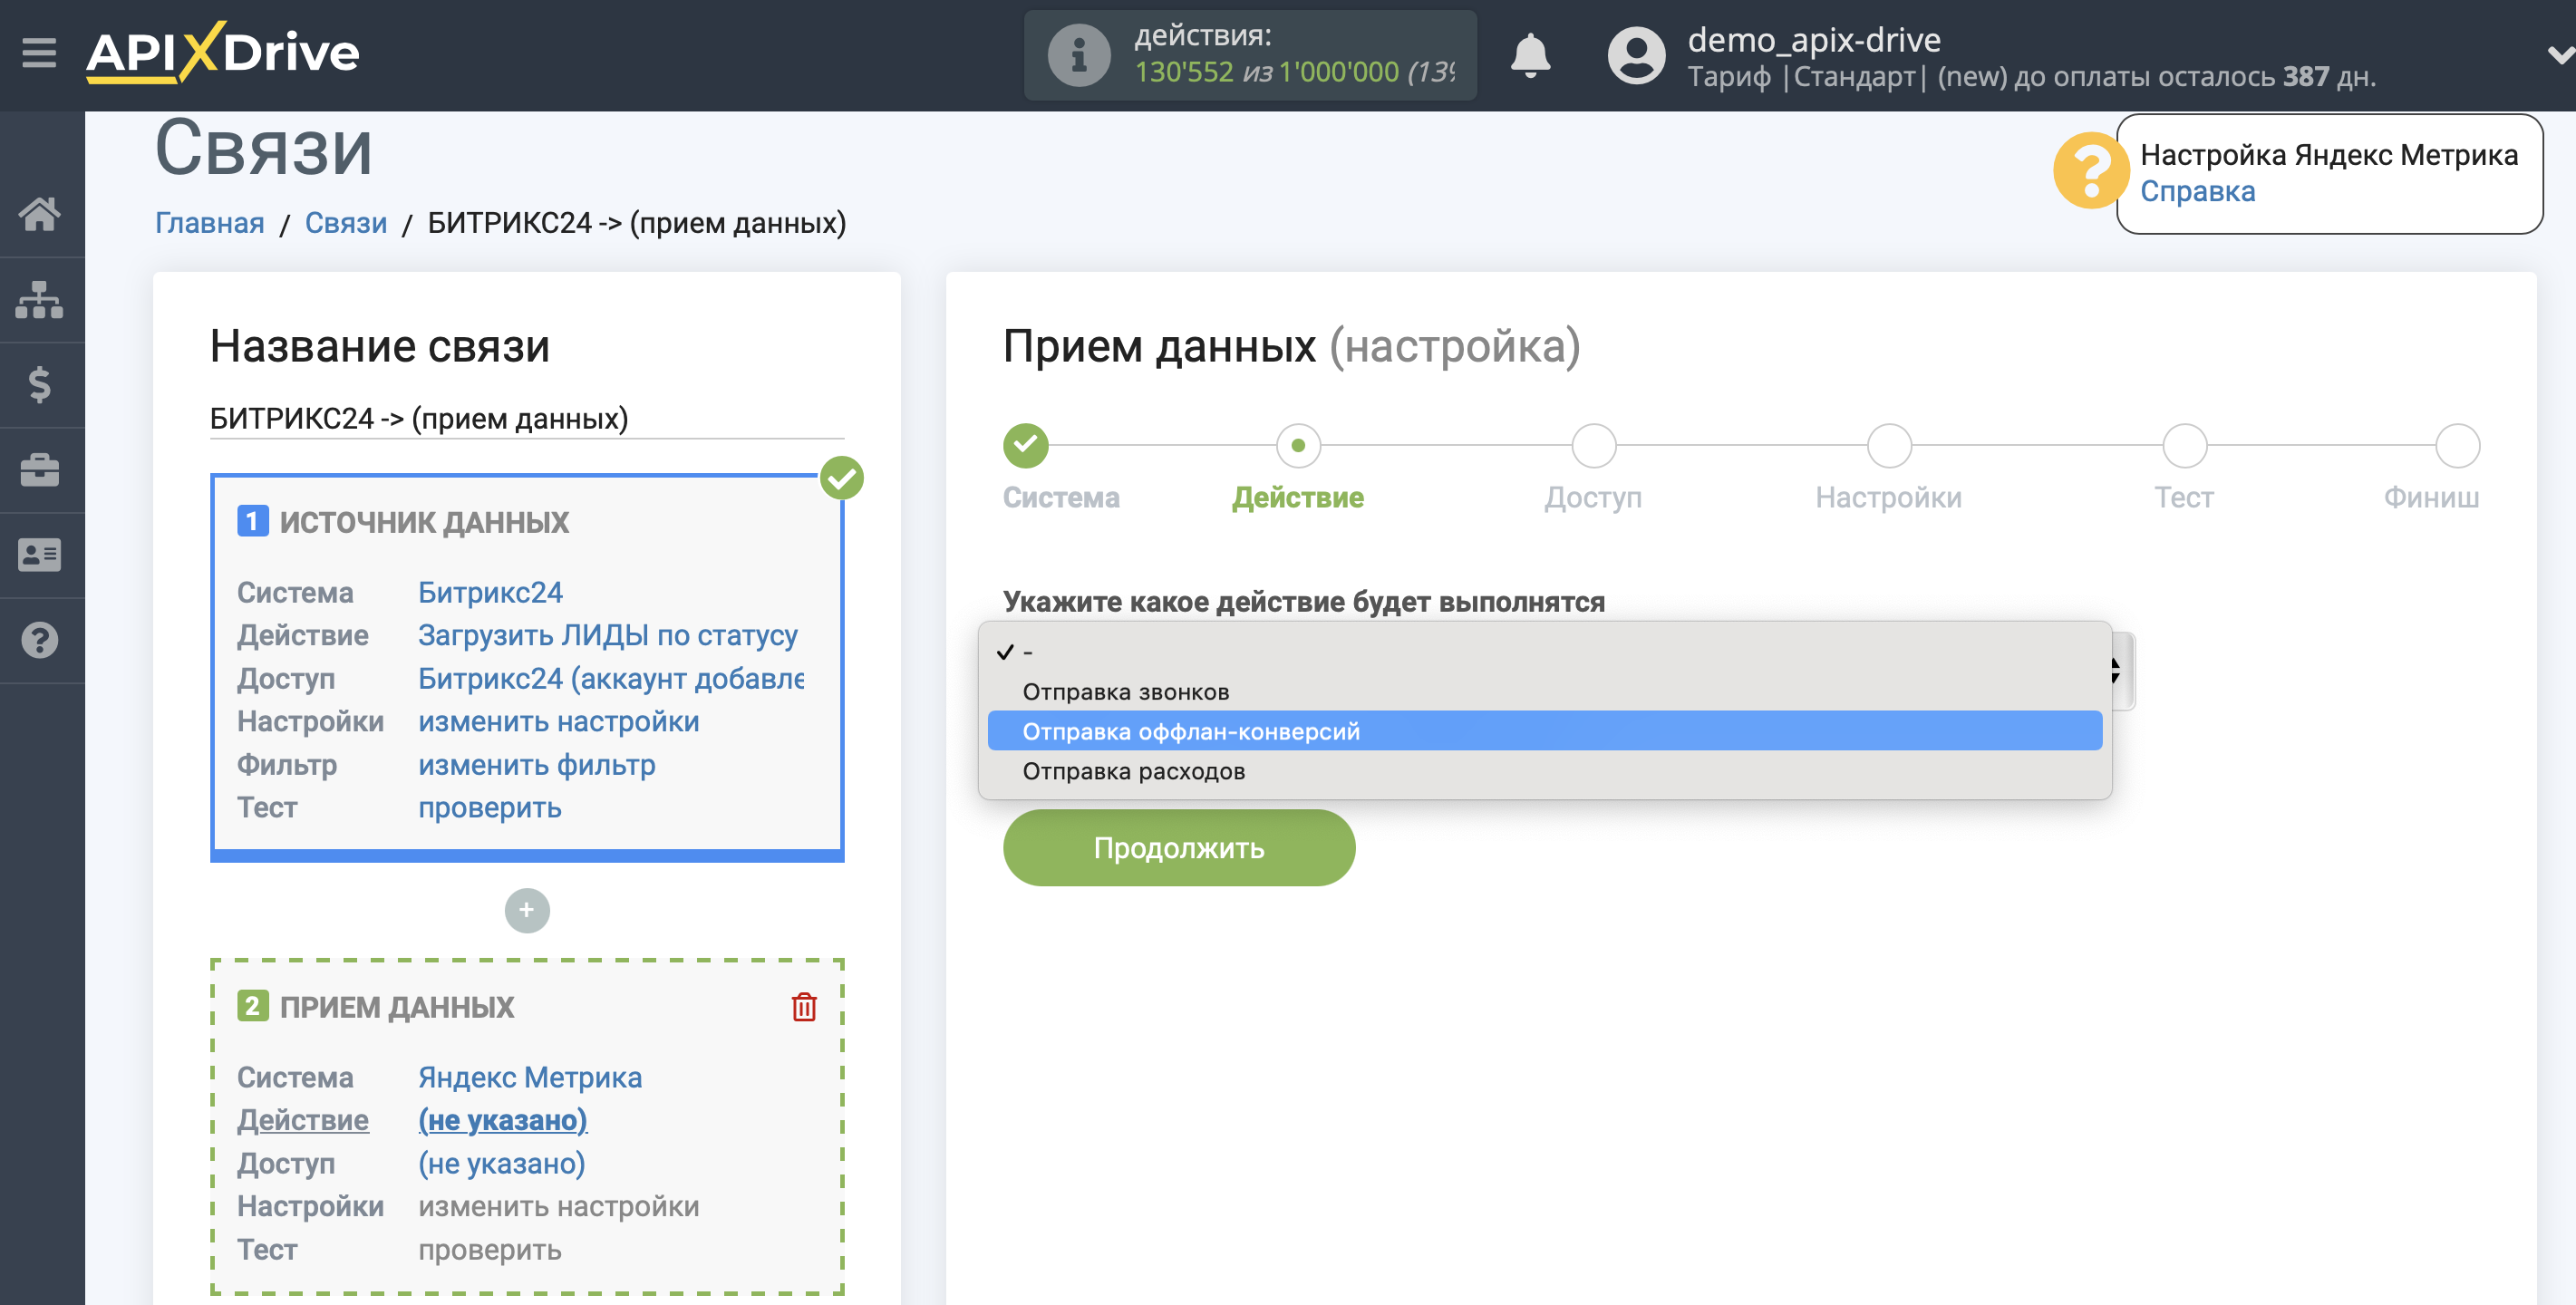 Импорт данных по конверсиям из Битрикс24 в Яндекс.Метрику | Выбор действия в системе приема данных